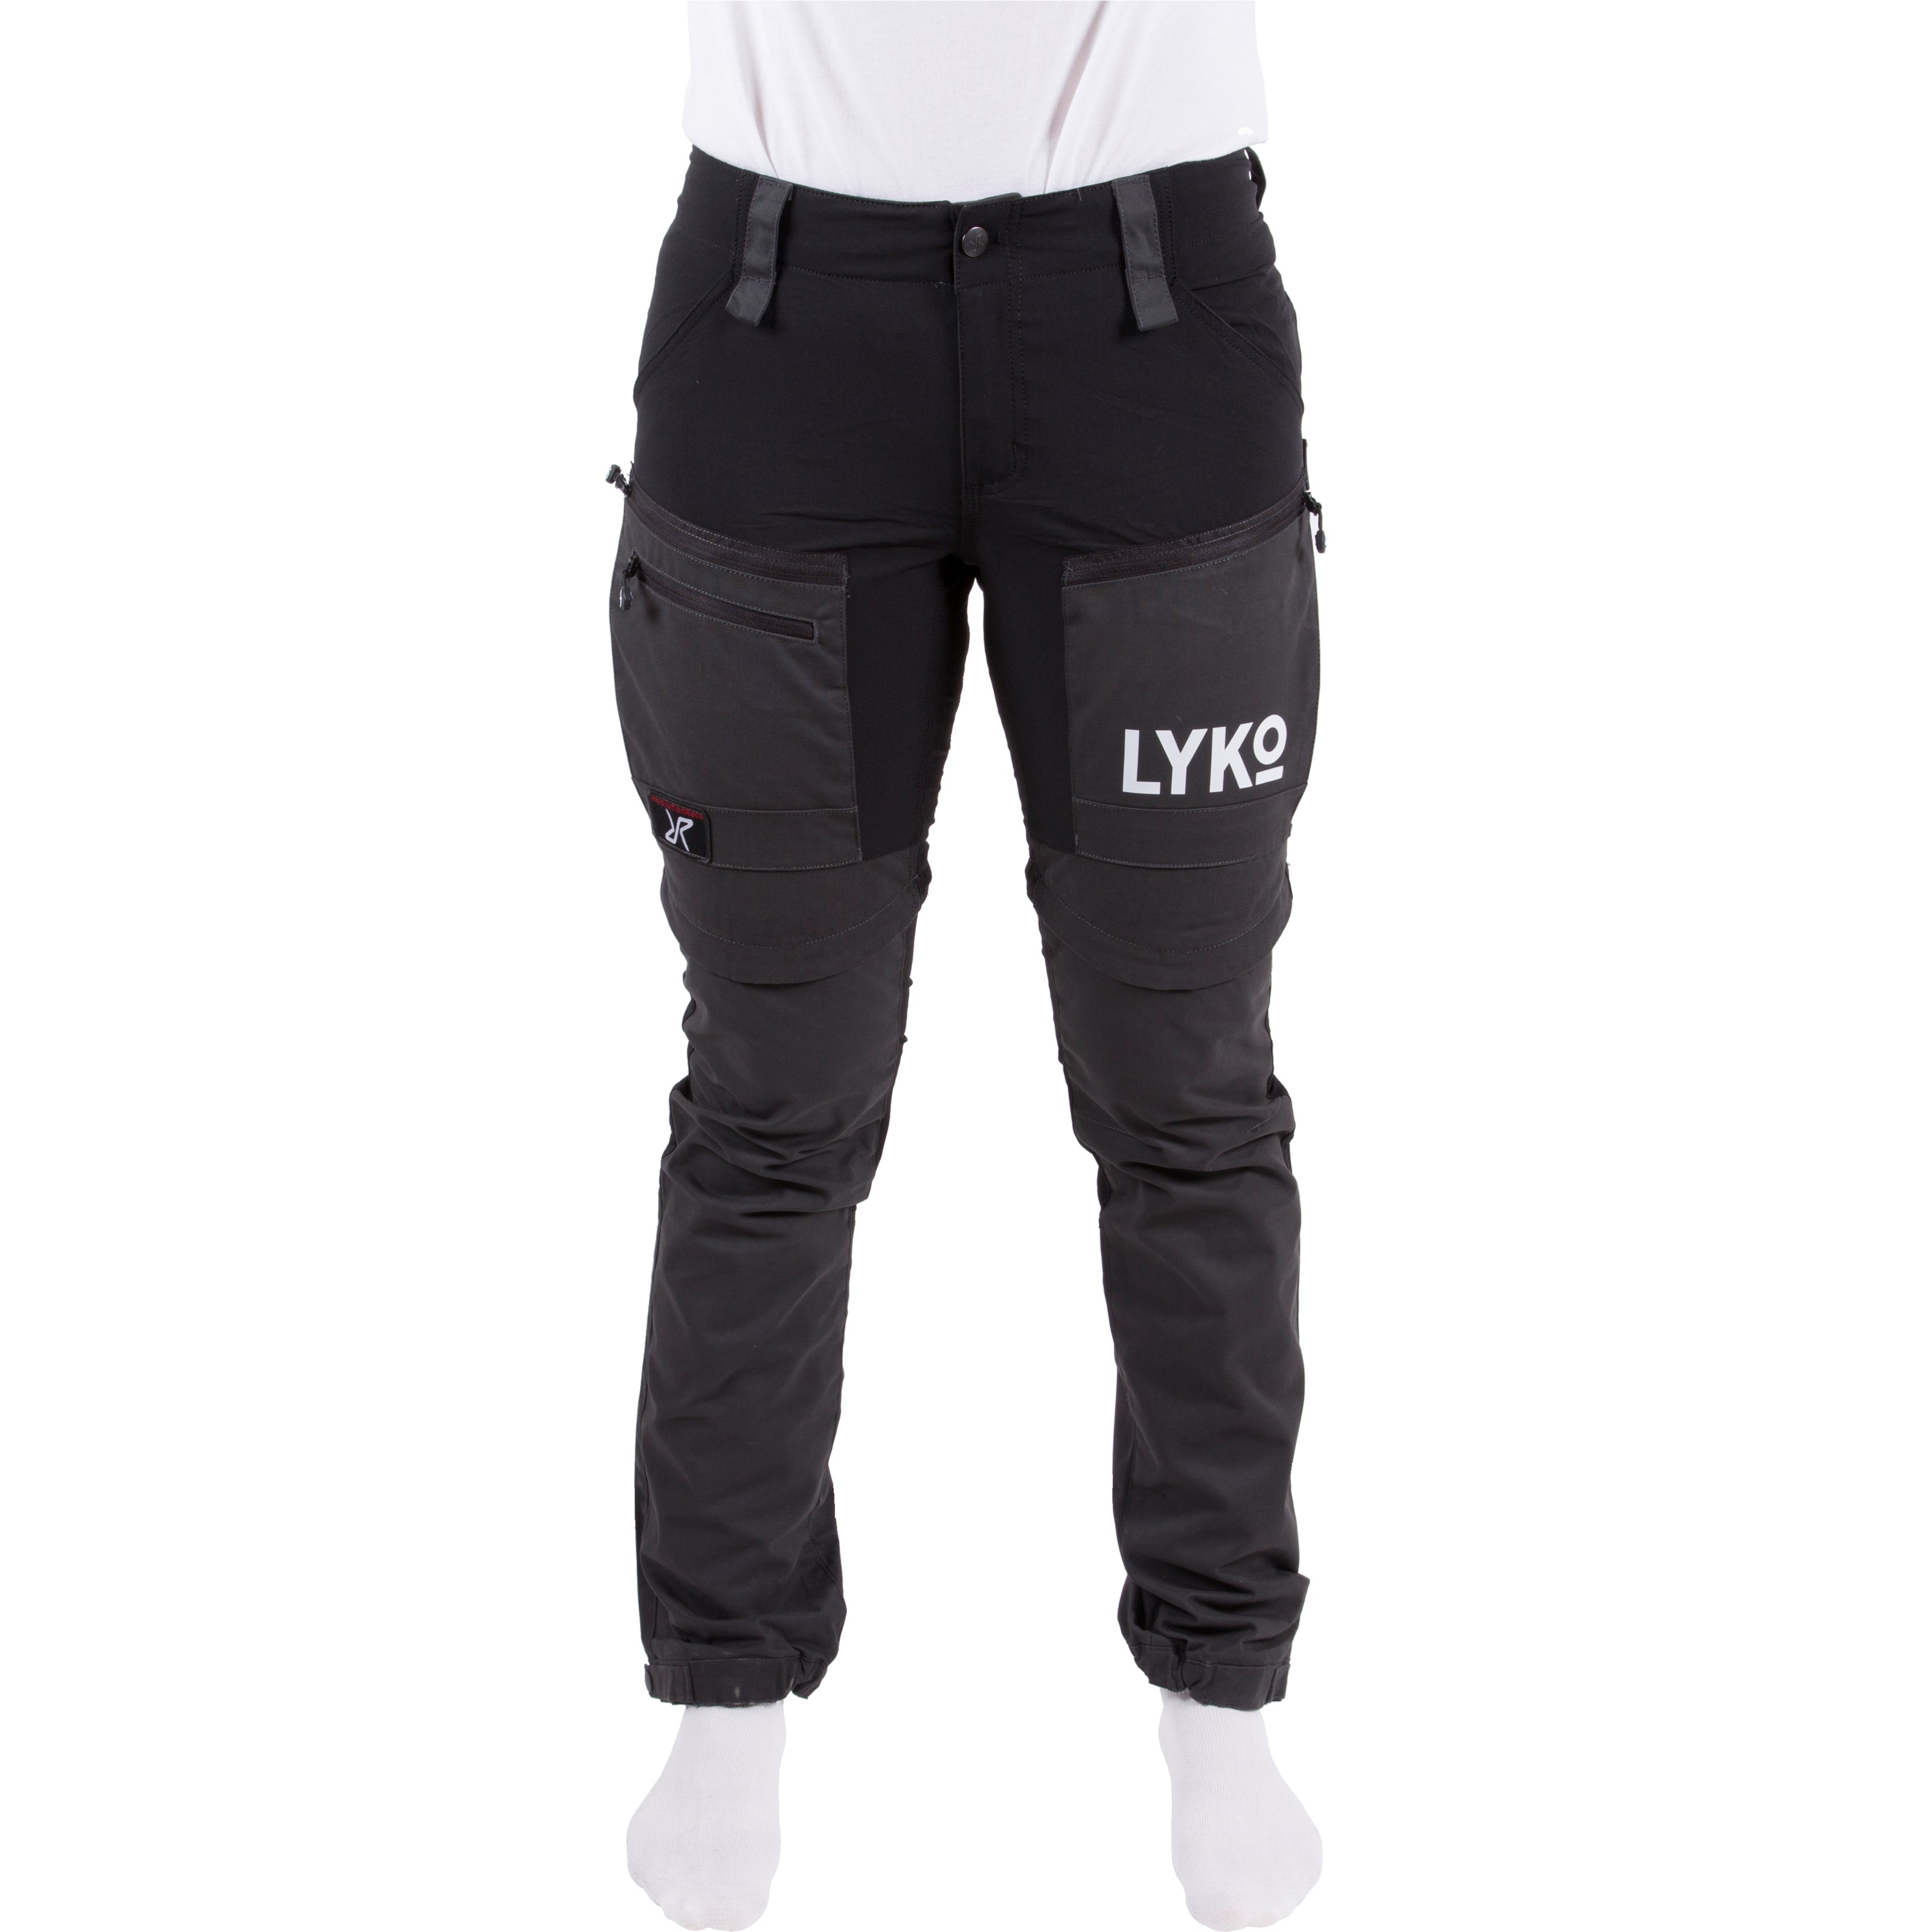 Lyko Workwear